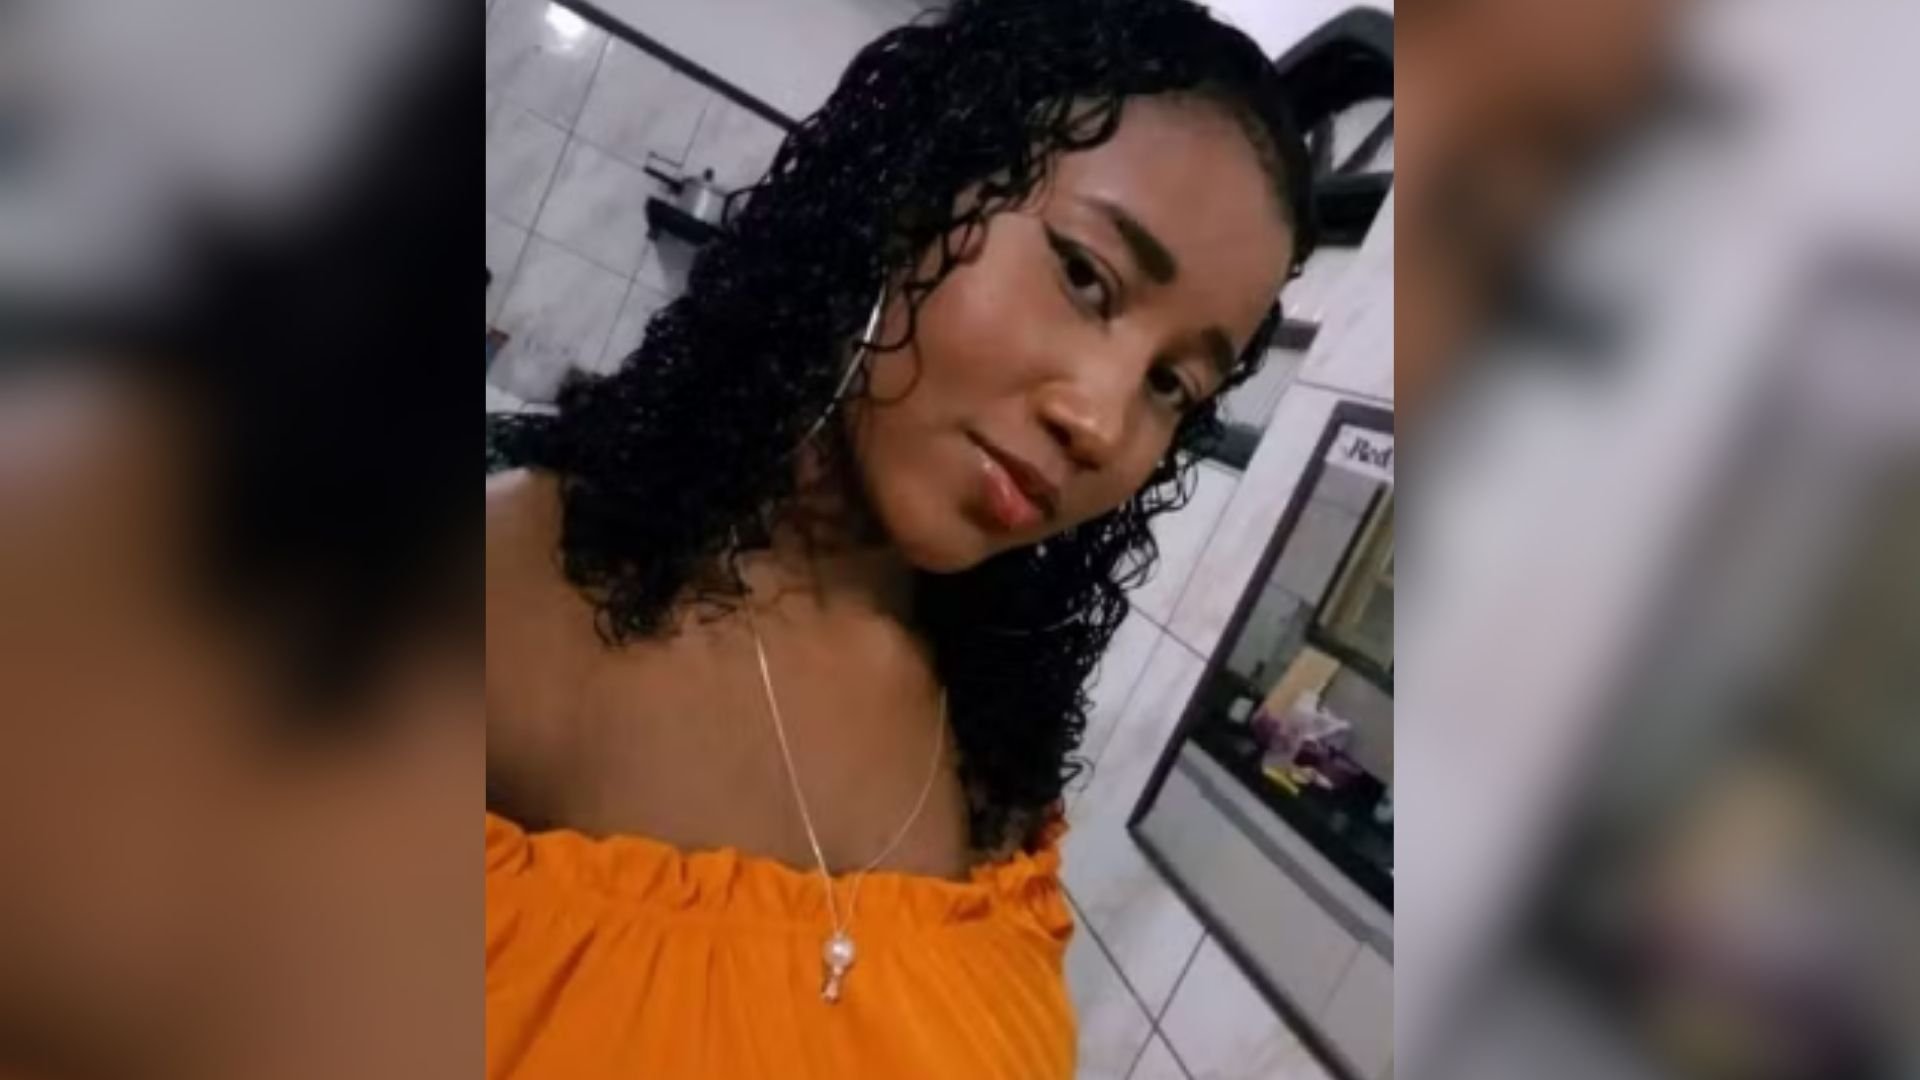 Segundo as investigações, mandante do crime era o ex-patrão da vítima e os dois mantinham um relacionamento extraconjugal; Nadyane Santana, de 20 anos, foi encontrada morta no início do mês